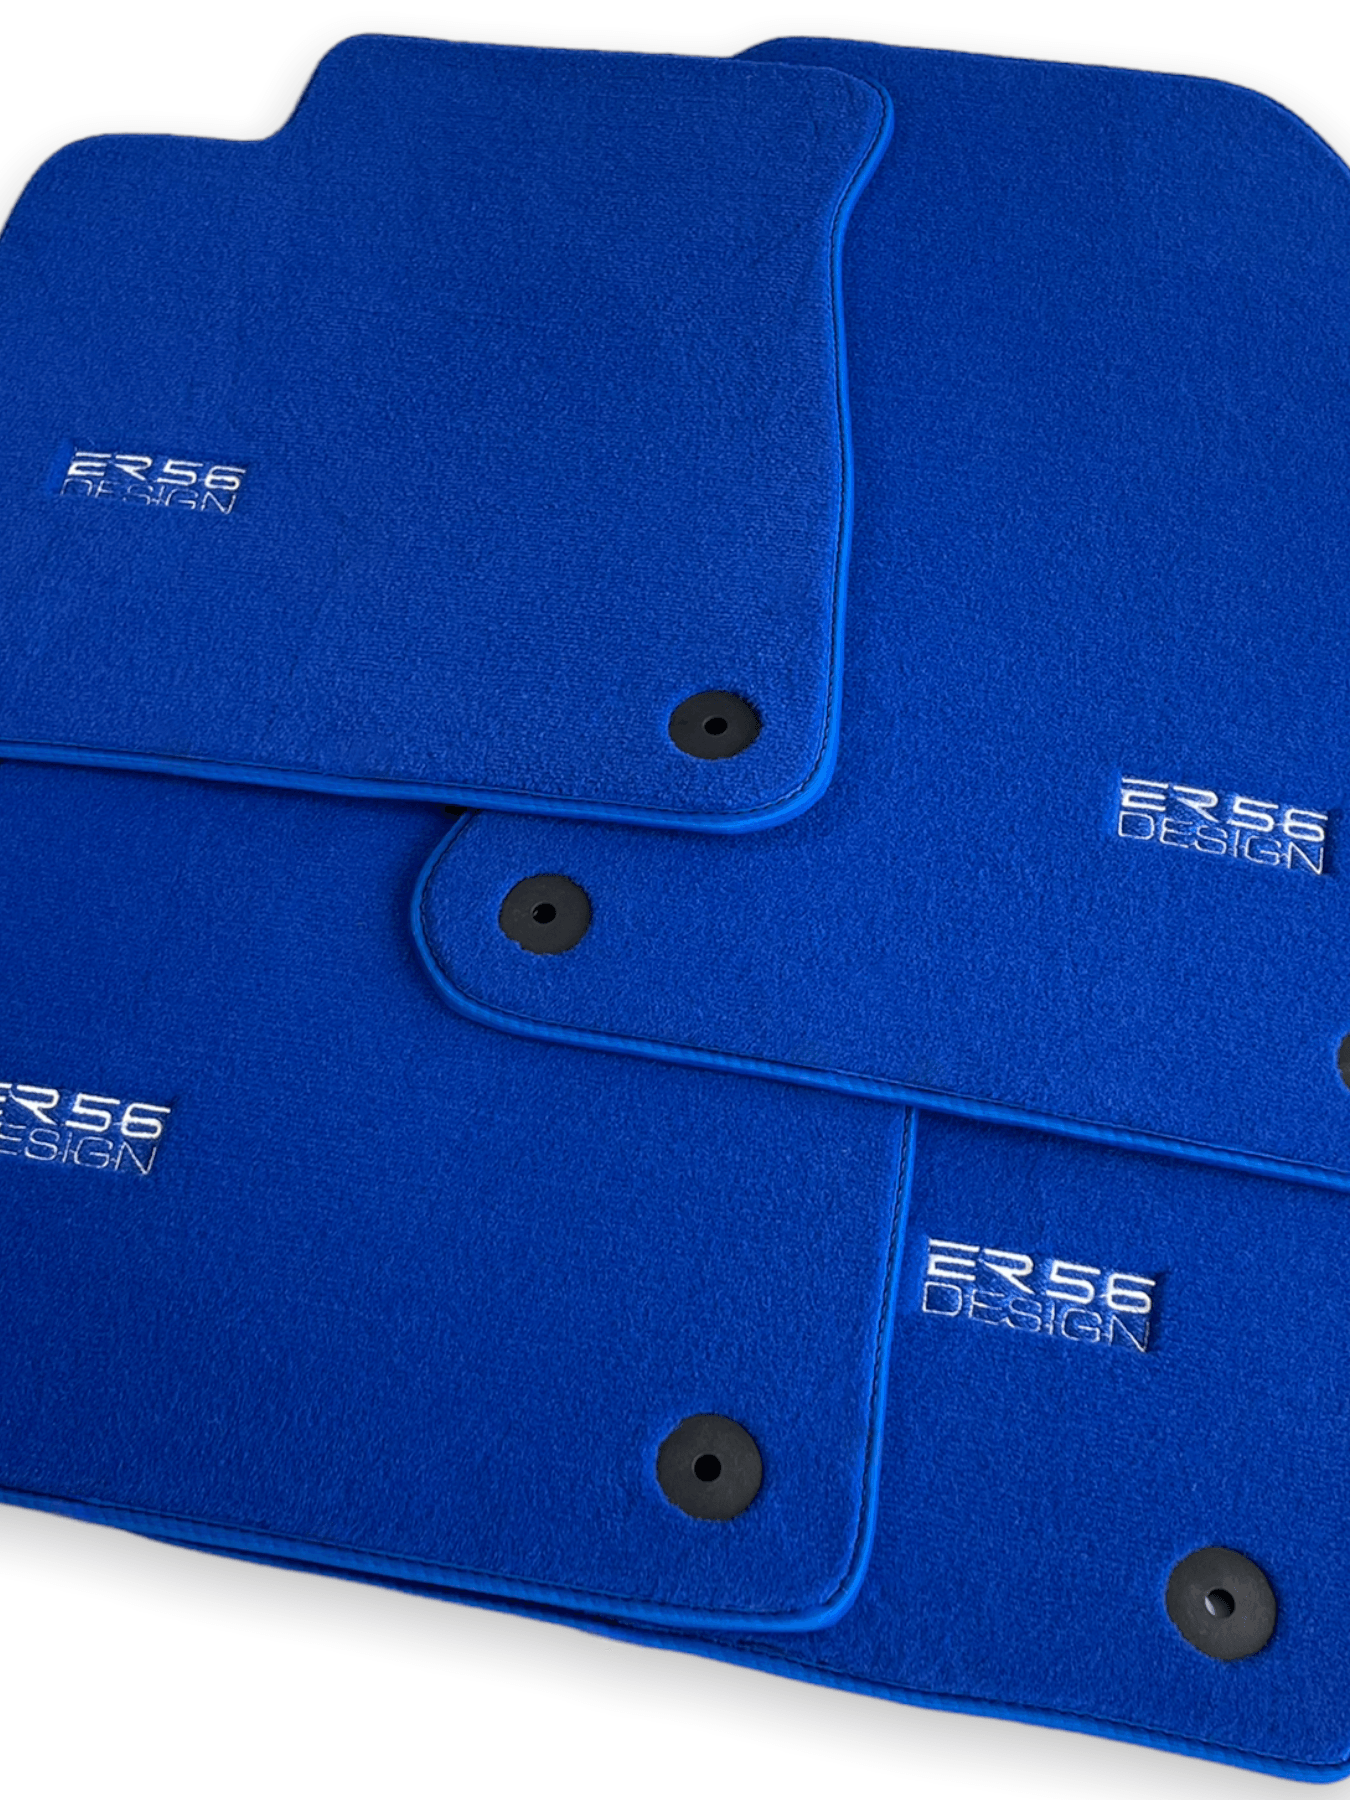 Blue Floor Mats for Audi A7 - C7 (2010-2018) | ER56 Design